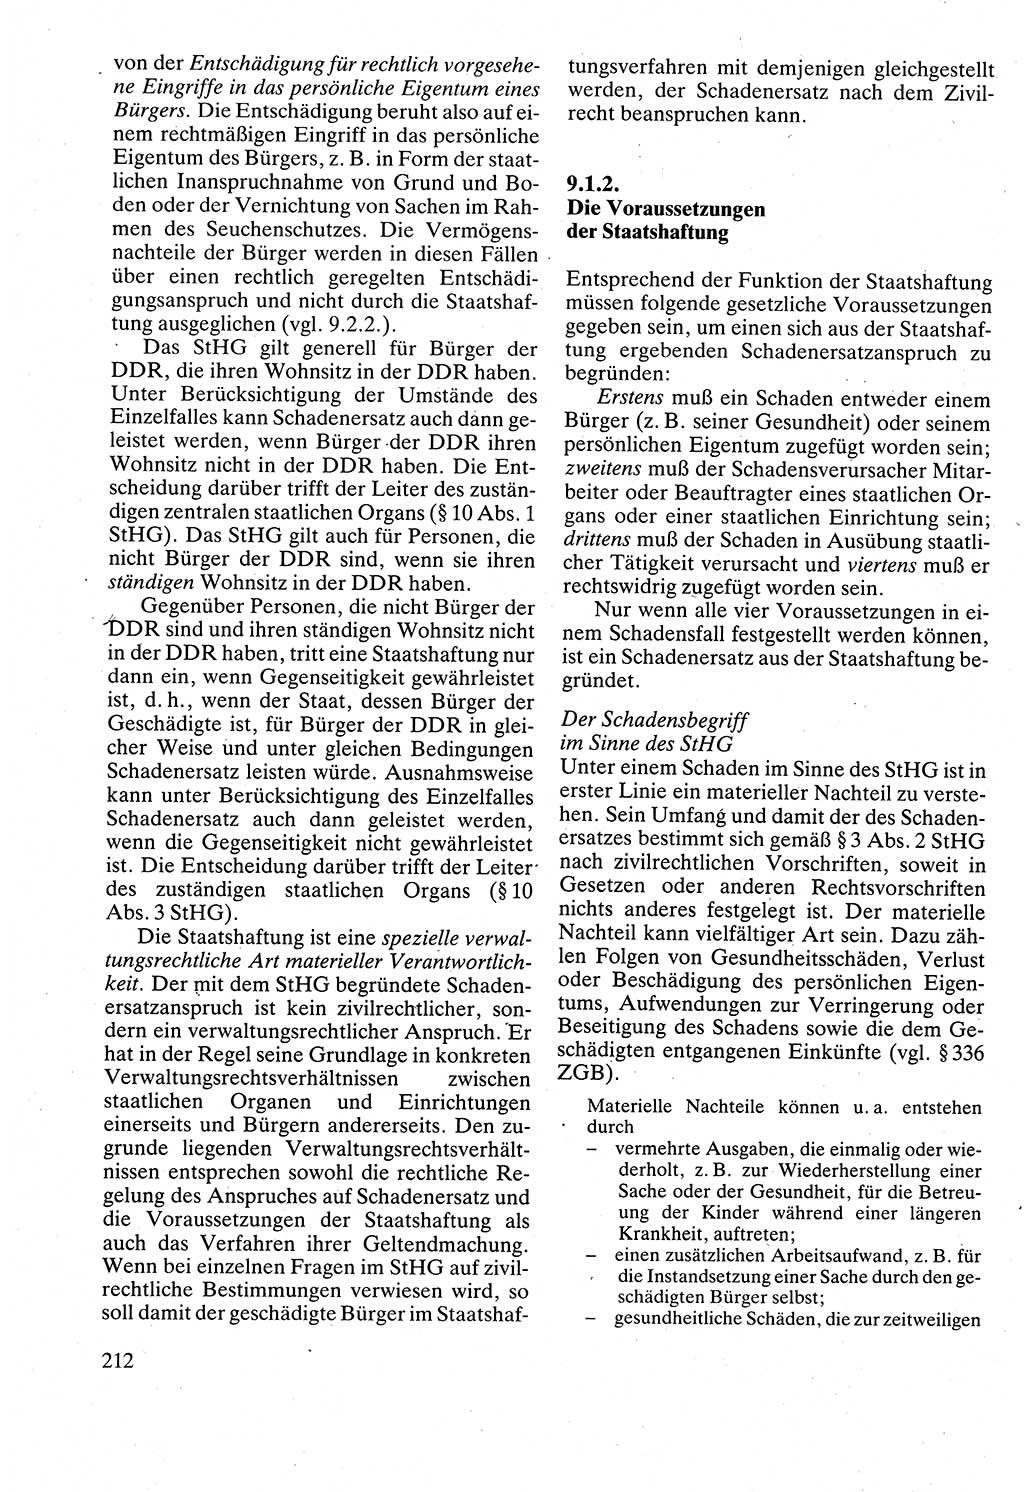 Verwaltungsrecht [Deutsche Demokratische Republik (DDR)], Lehrbuch 1988, Seite 212 (Verw.-R. DDR Lb. 1988, S. 212)